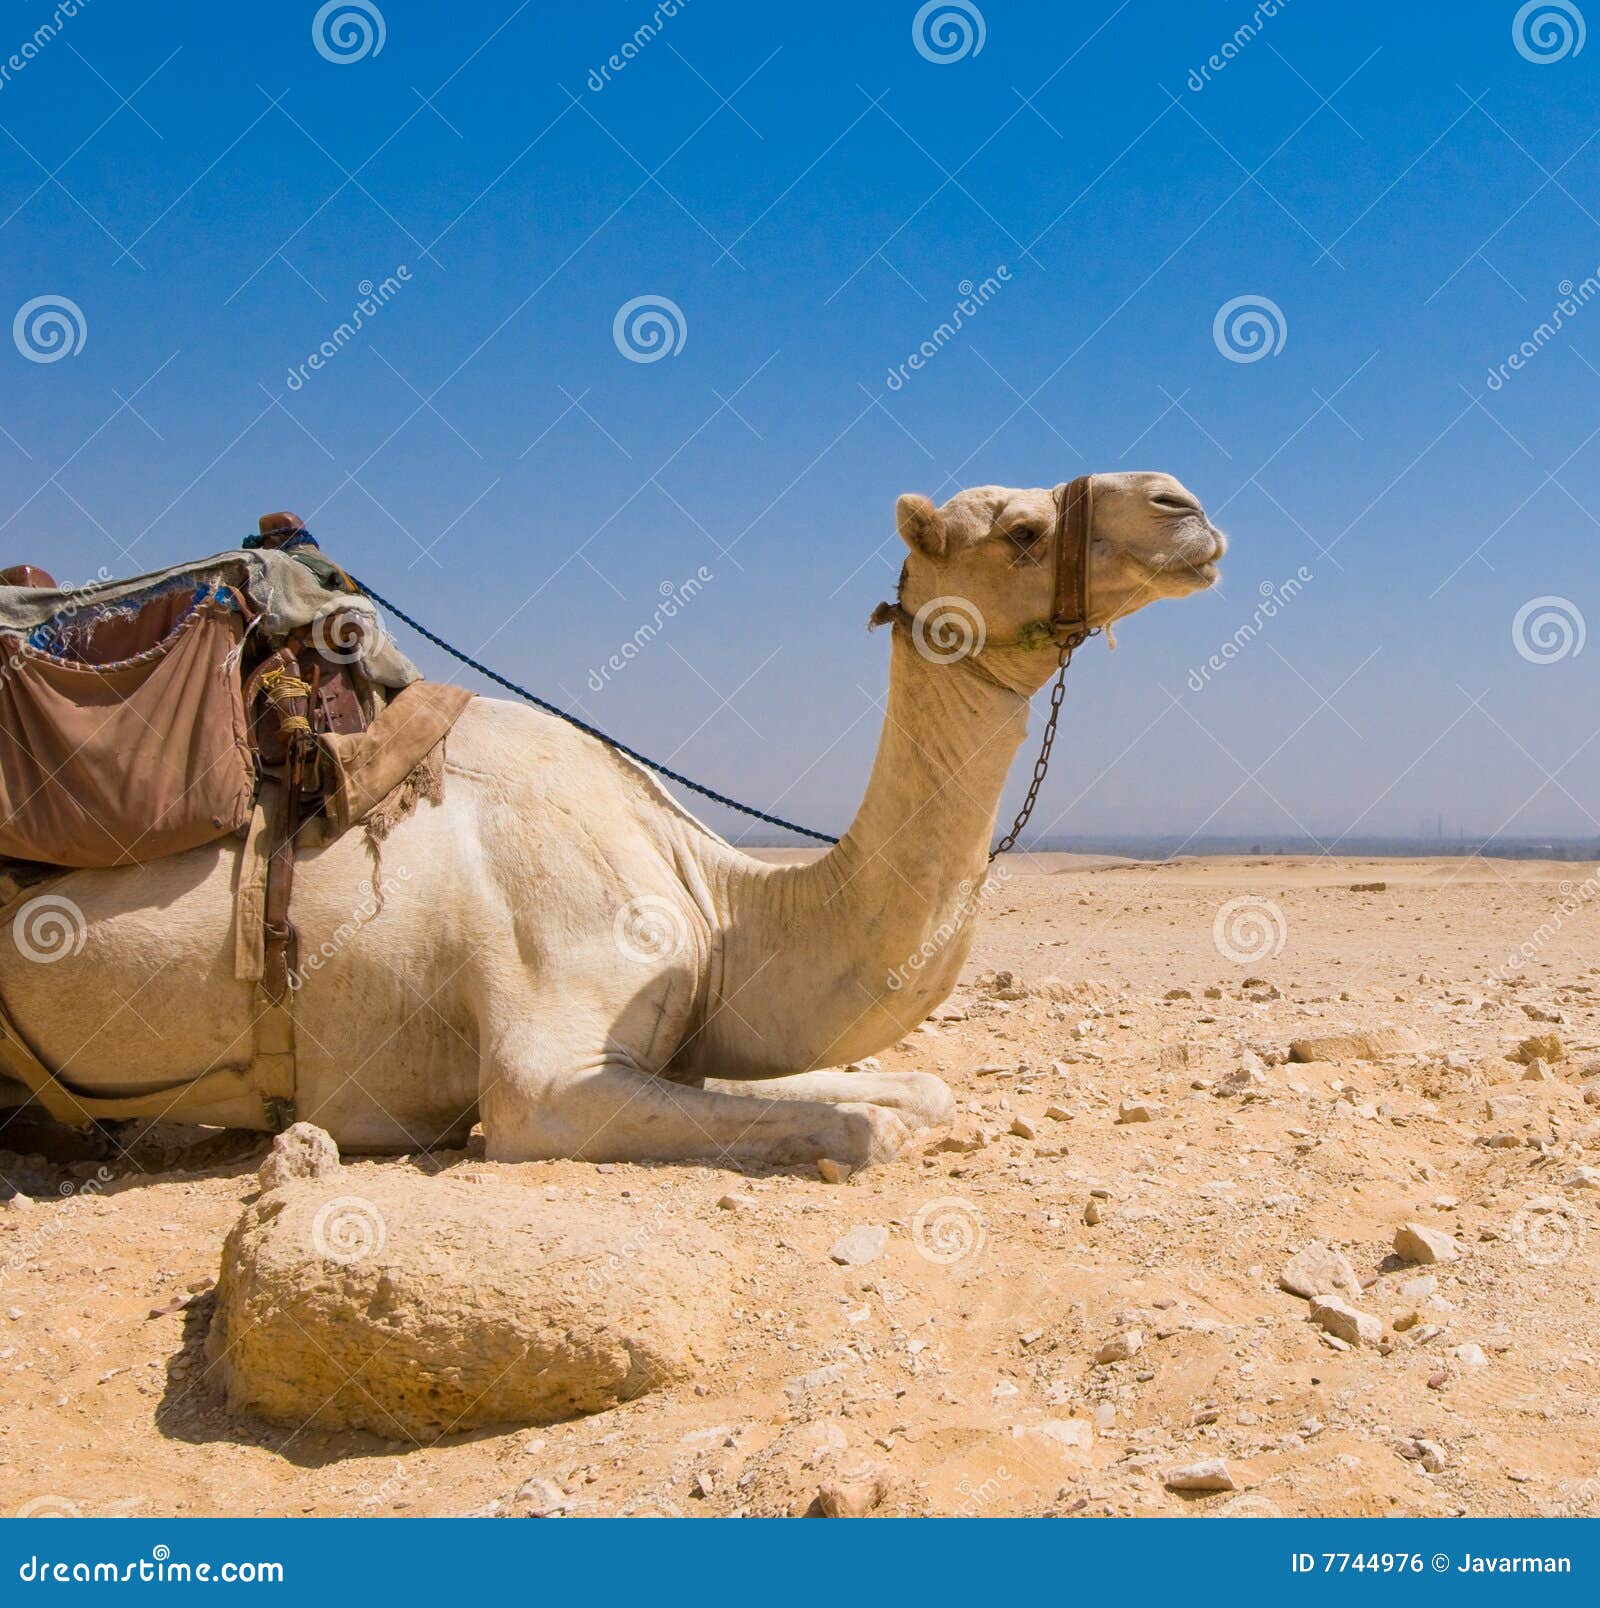 Kameel In Woestijn Stock Foto. Image Of Zitting, Sahara - 7744976